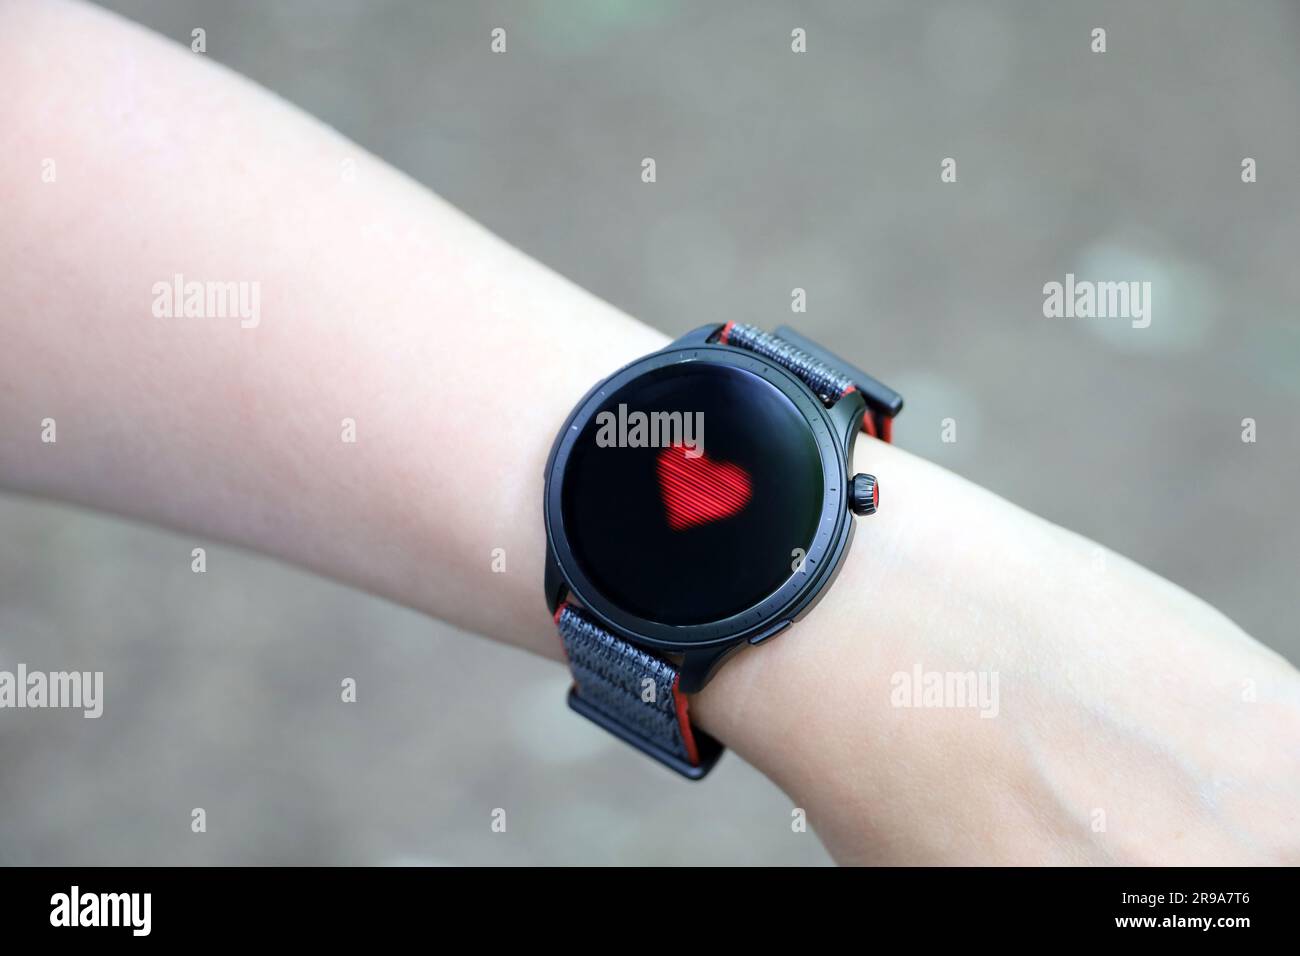 Reloj inteligente en la mano femenina que mide el ritmo cardíaco. Pantalla redonda con aplicación para monitoreo de salud Foto de stock